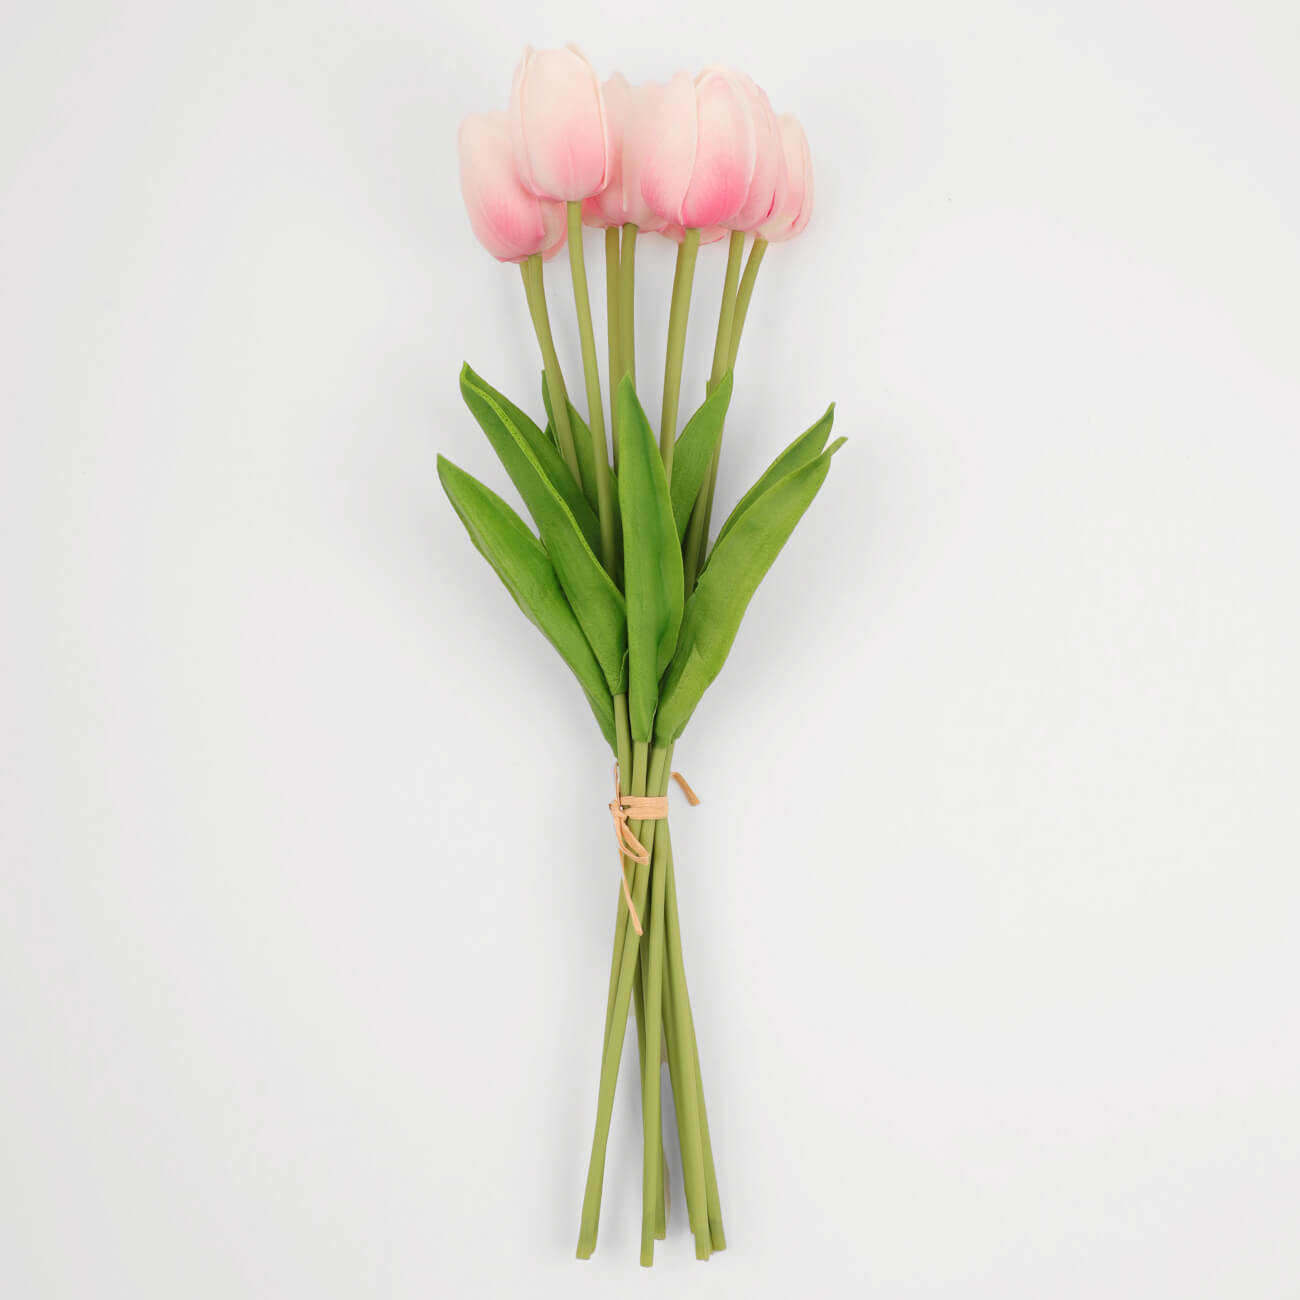 Букет искусственный, 35 см, полиуретан, Розовые тюльпаны, Tulip garden букет искусственный 35 см полиуретан белые тюльпаны tulip garden